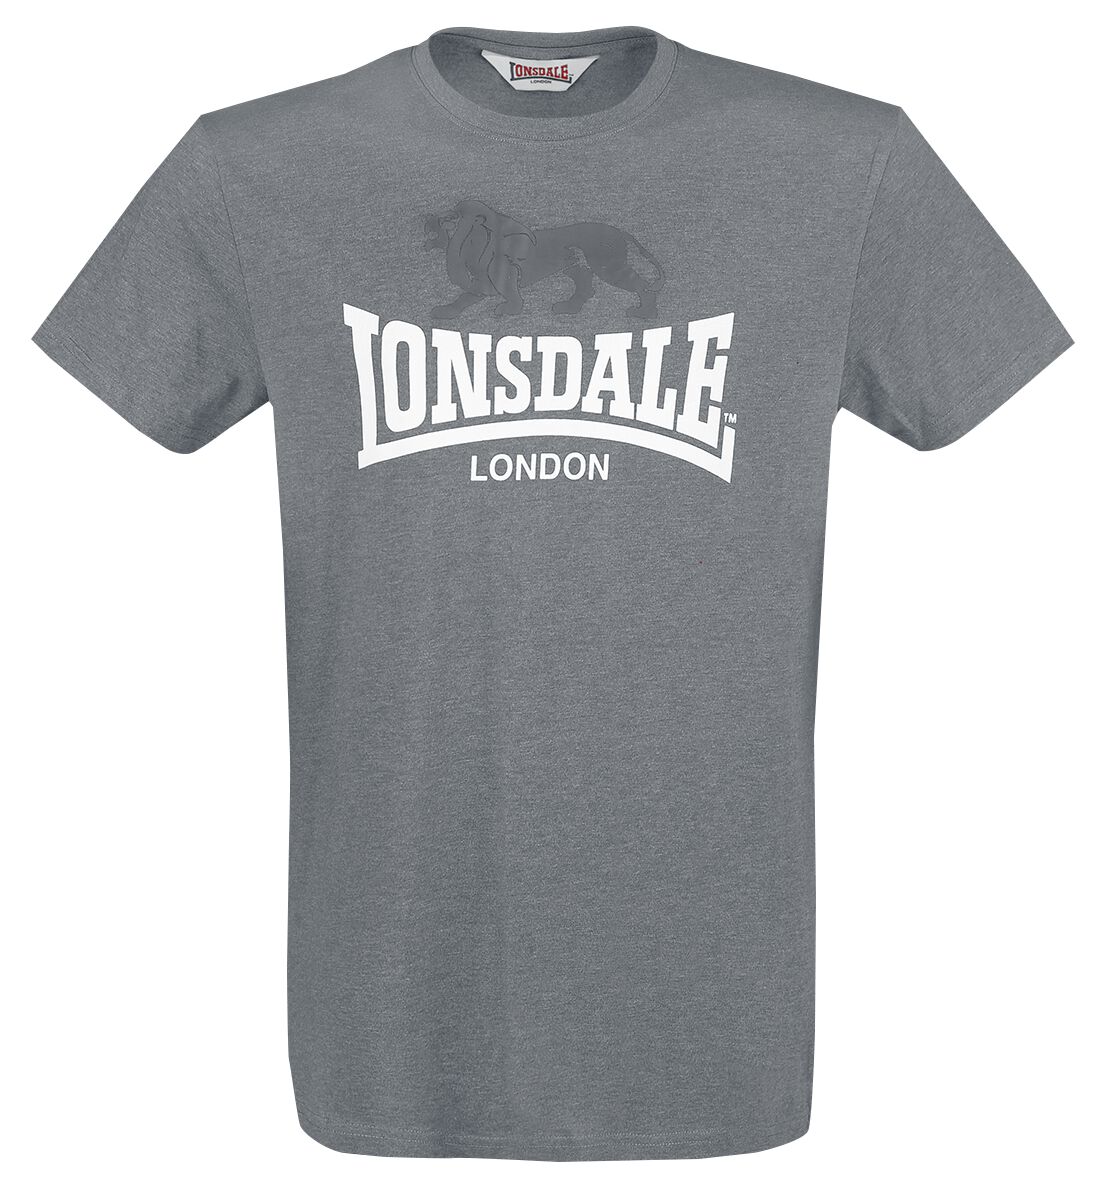 Lonsdale London T-Shirt - Gargrave - M bis 3XL - für Männer - Größe 3XL - anthrazit